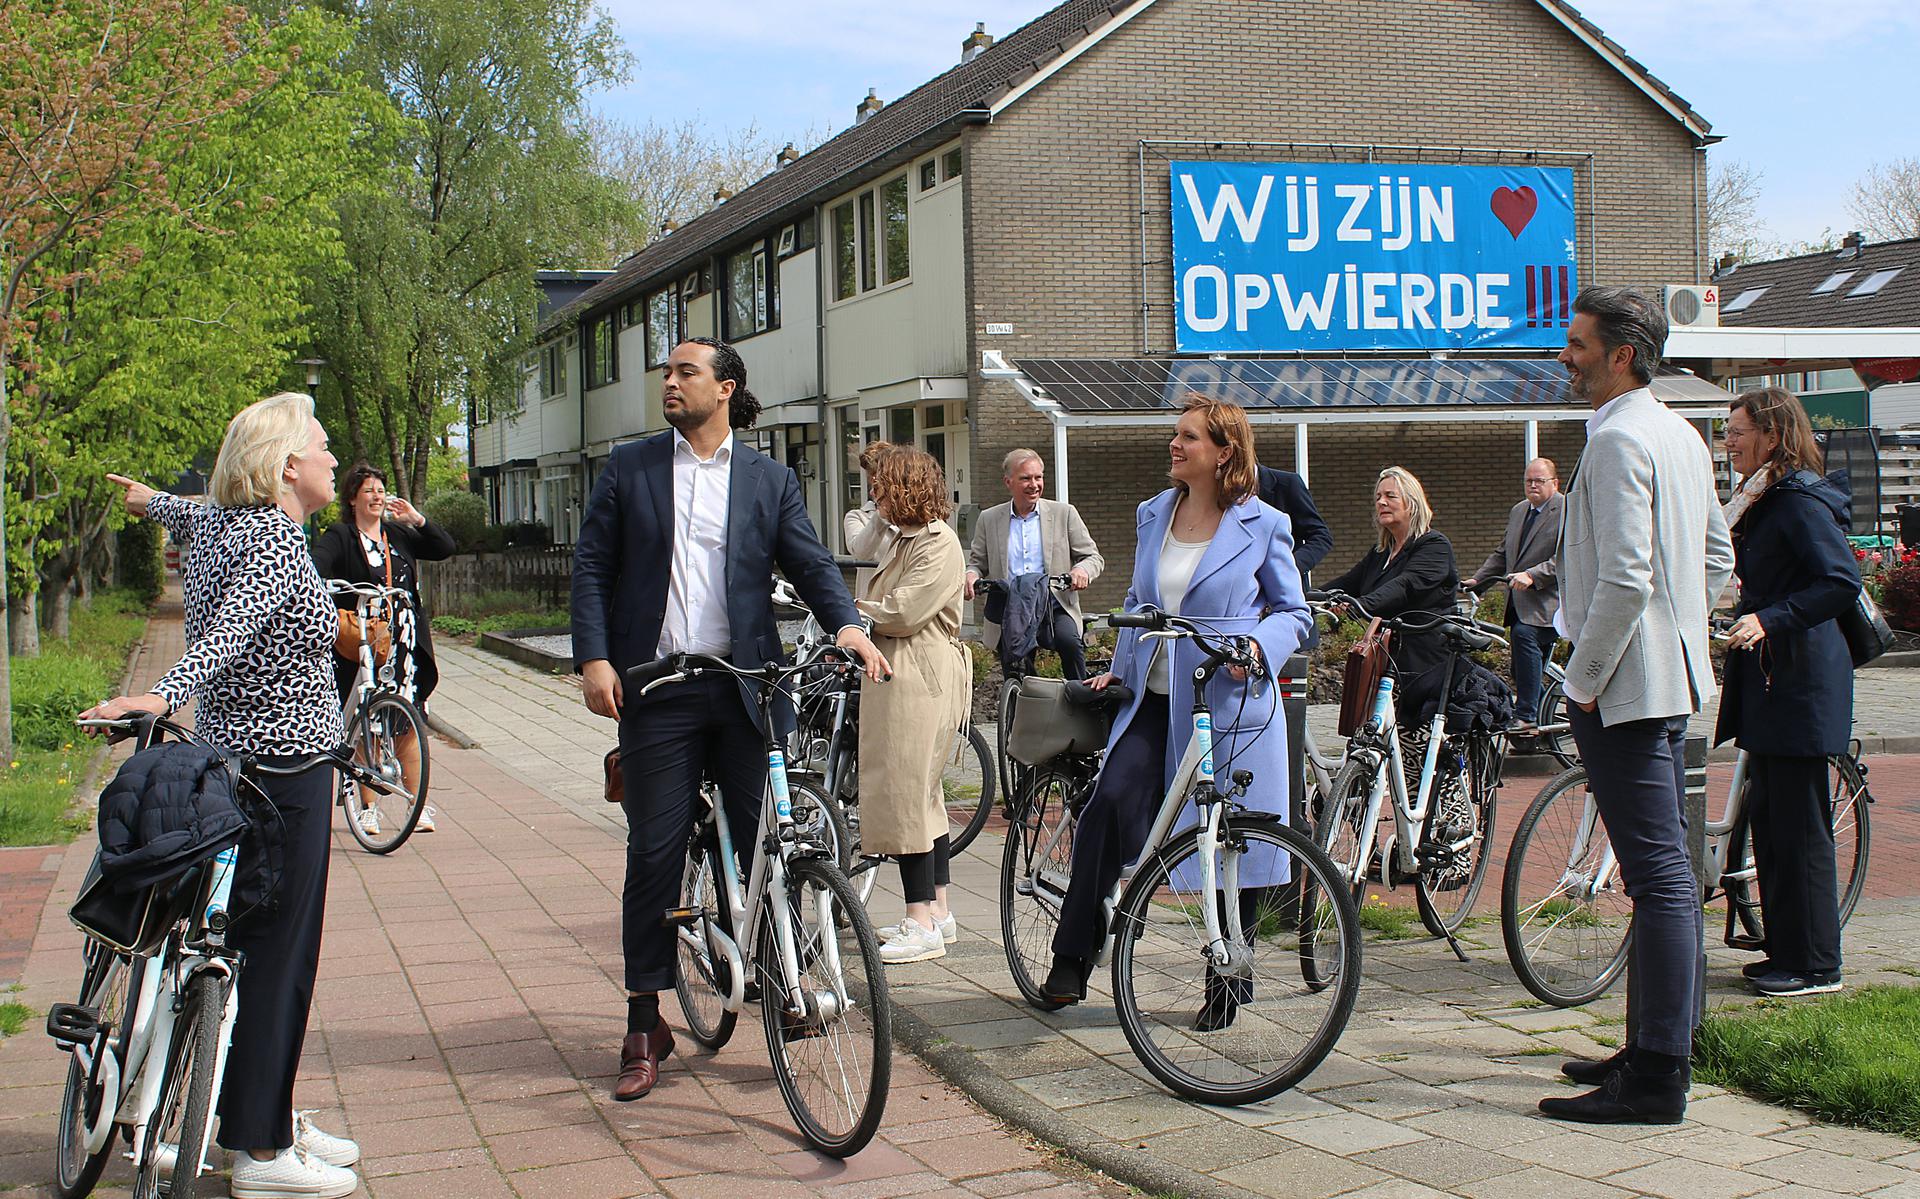 De Kamerleden in gesprek met wethouder Annalies Usmany tijdens de fietstocht door de wijk Opwierde. Foto: Jan van Heerde